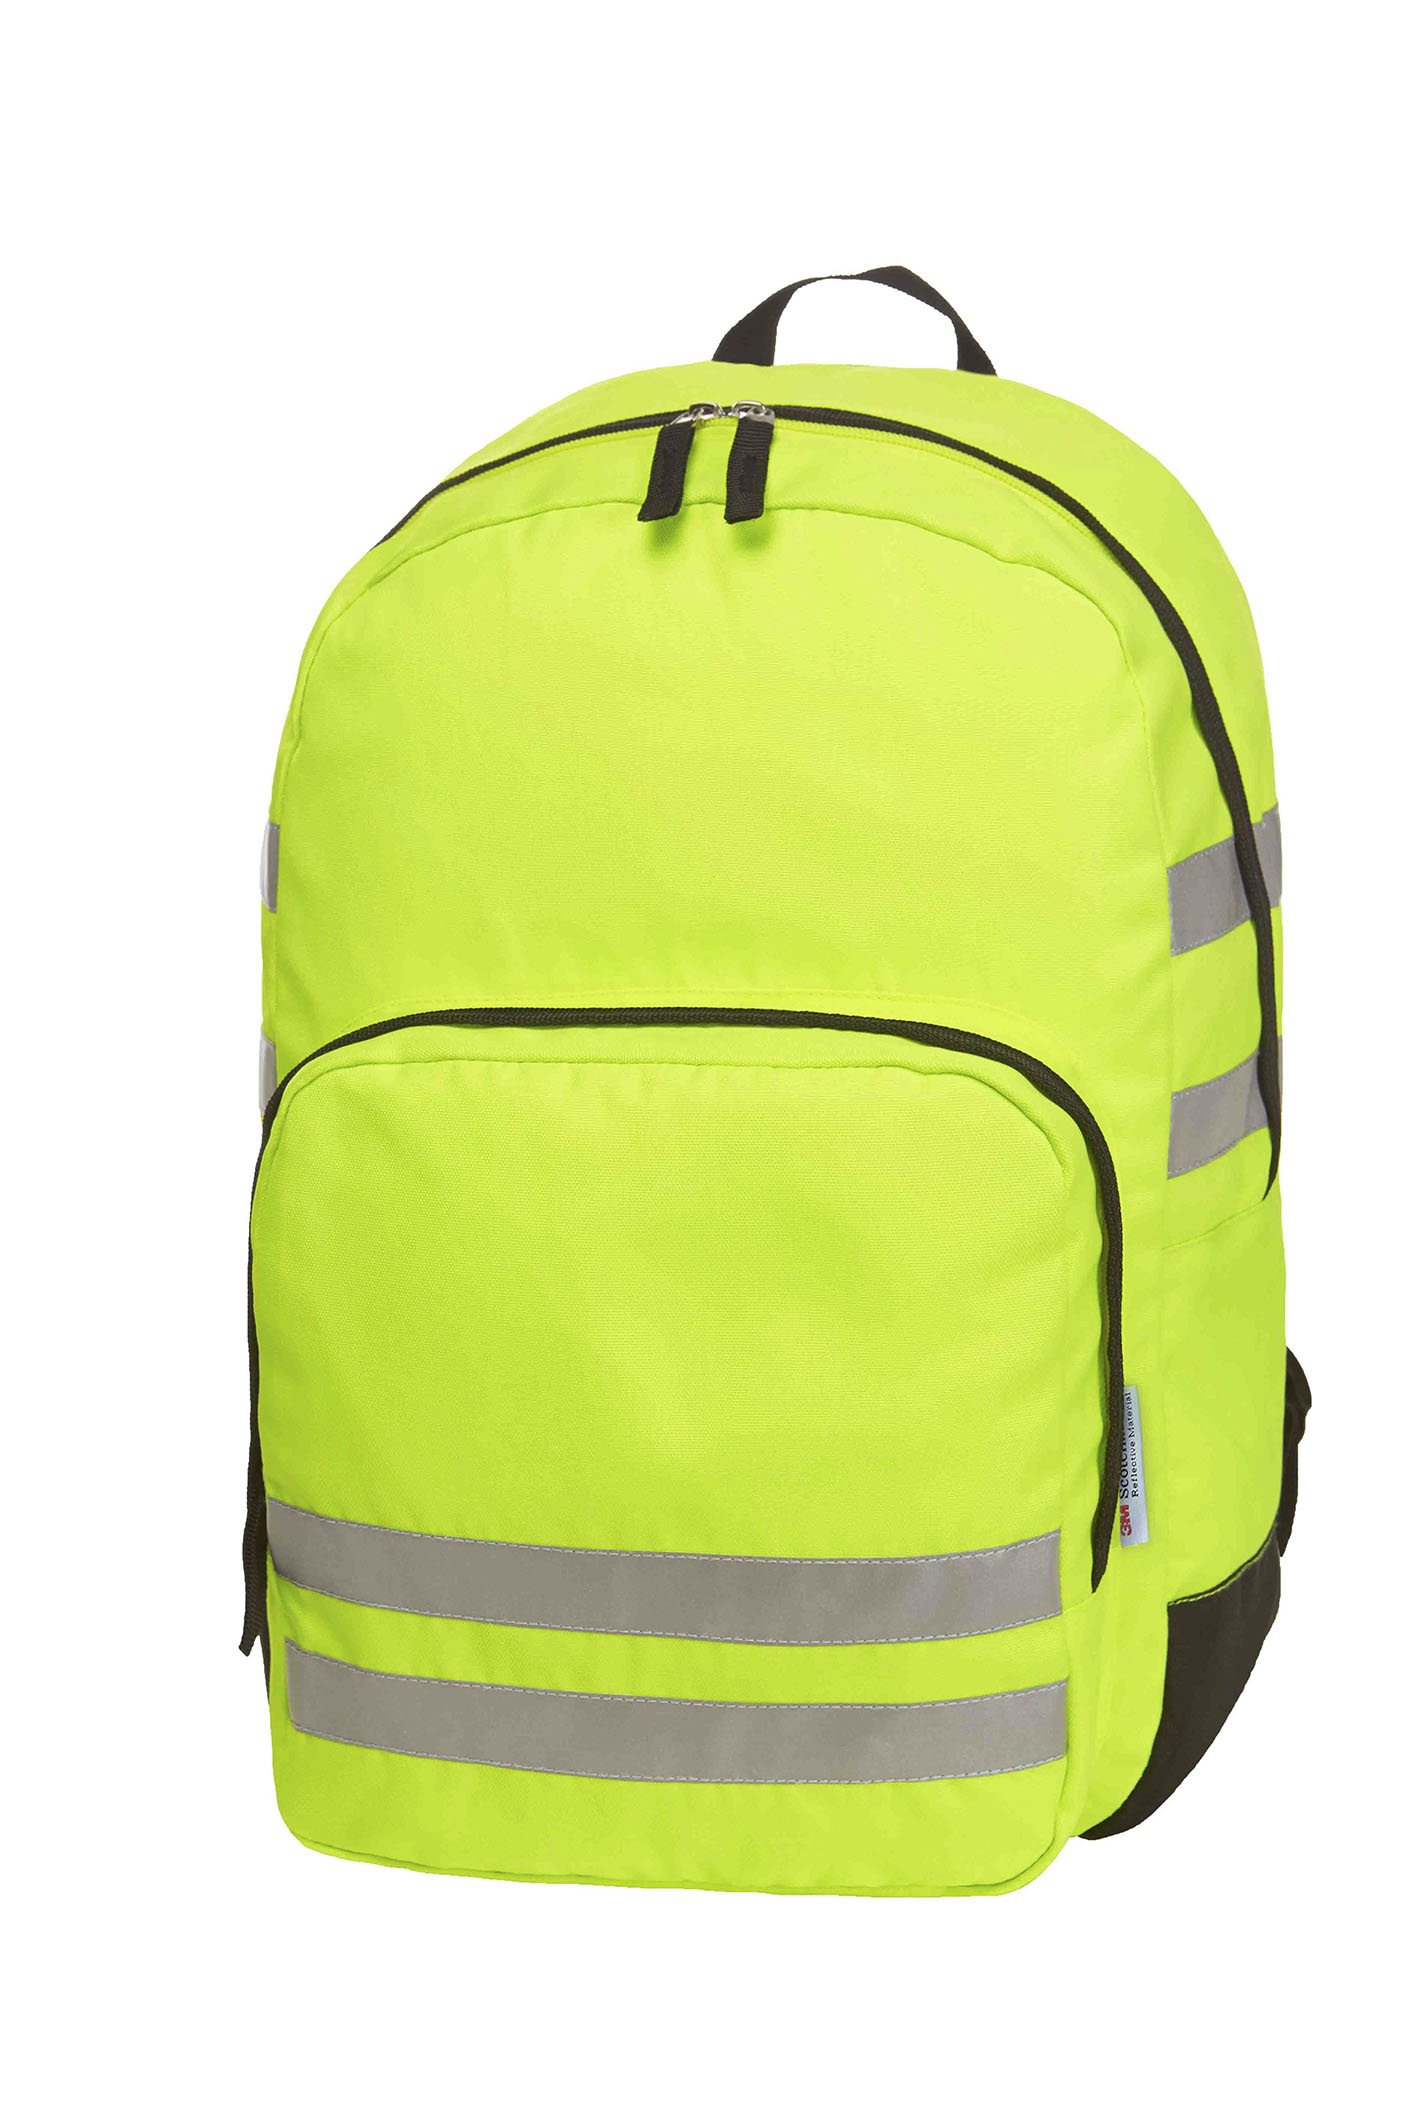 backpack REFLEX